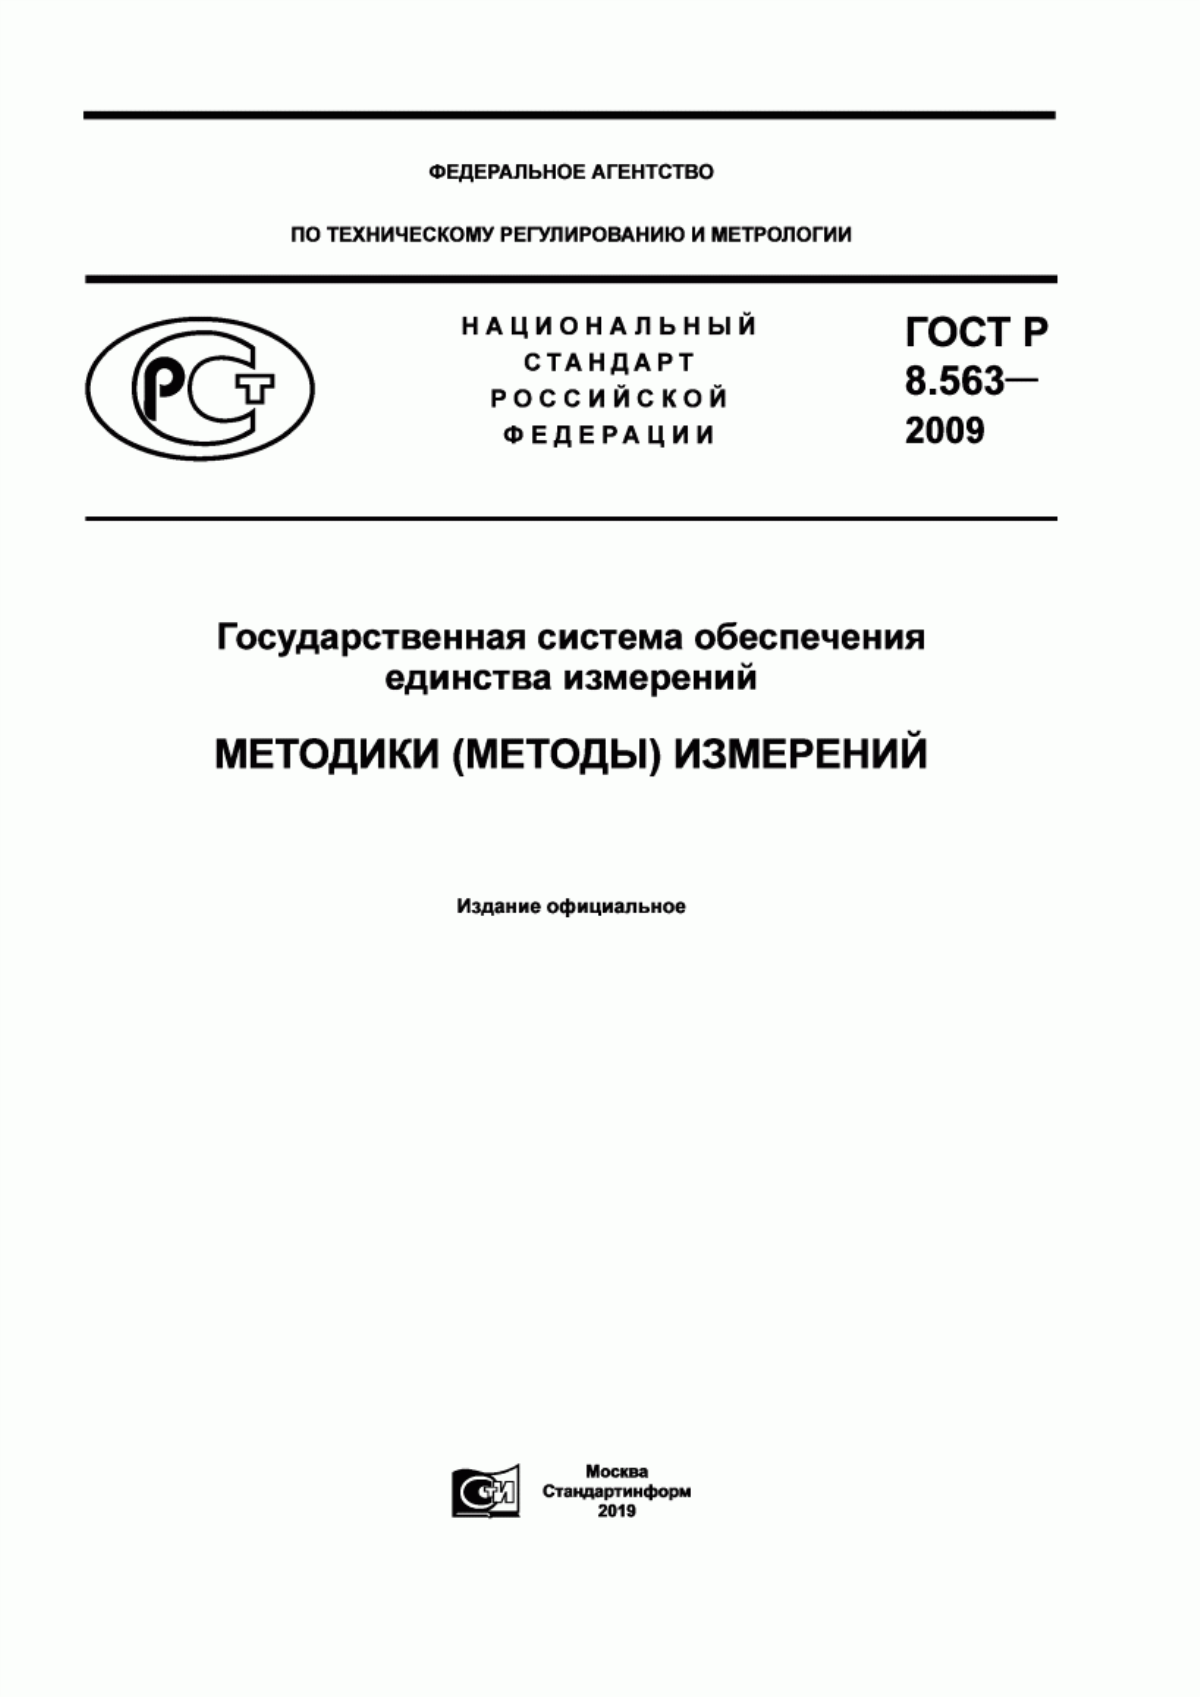 ГОСТ Р 8.563-2009 Государственная система обеспечения единства измерений. Методики (методы) измерений